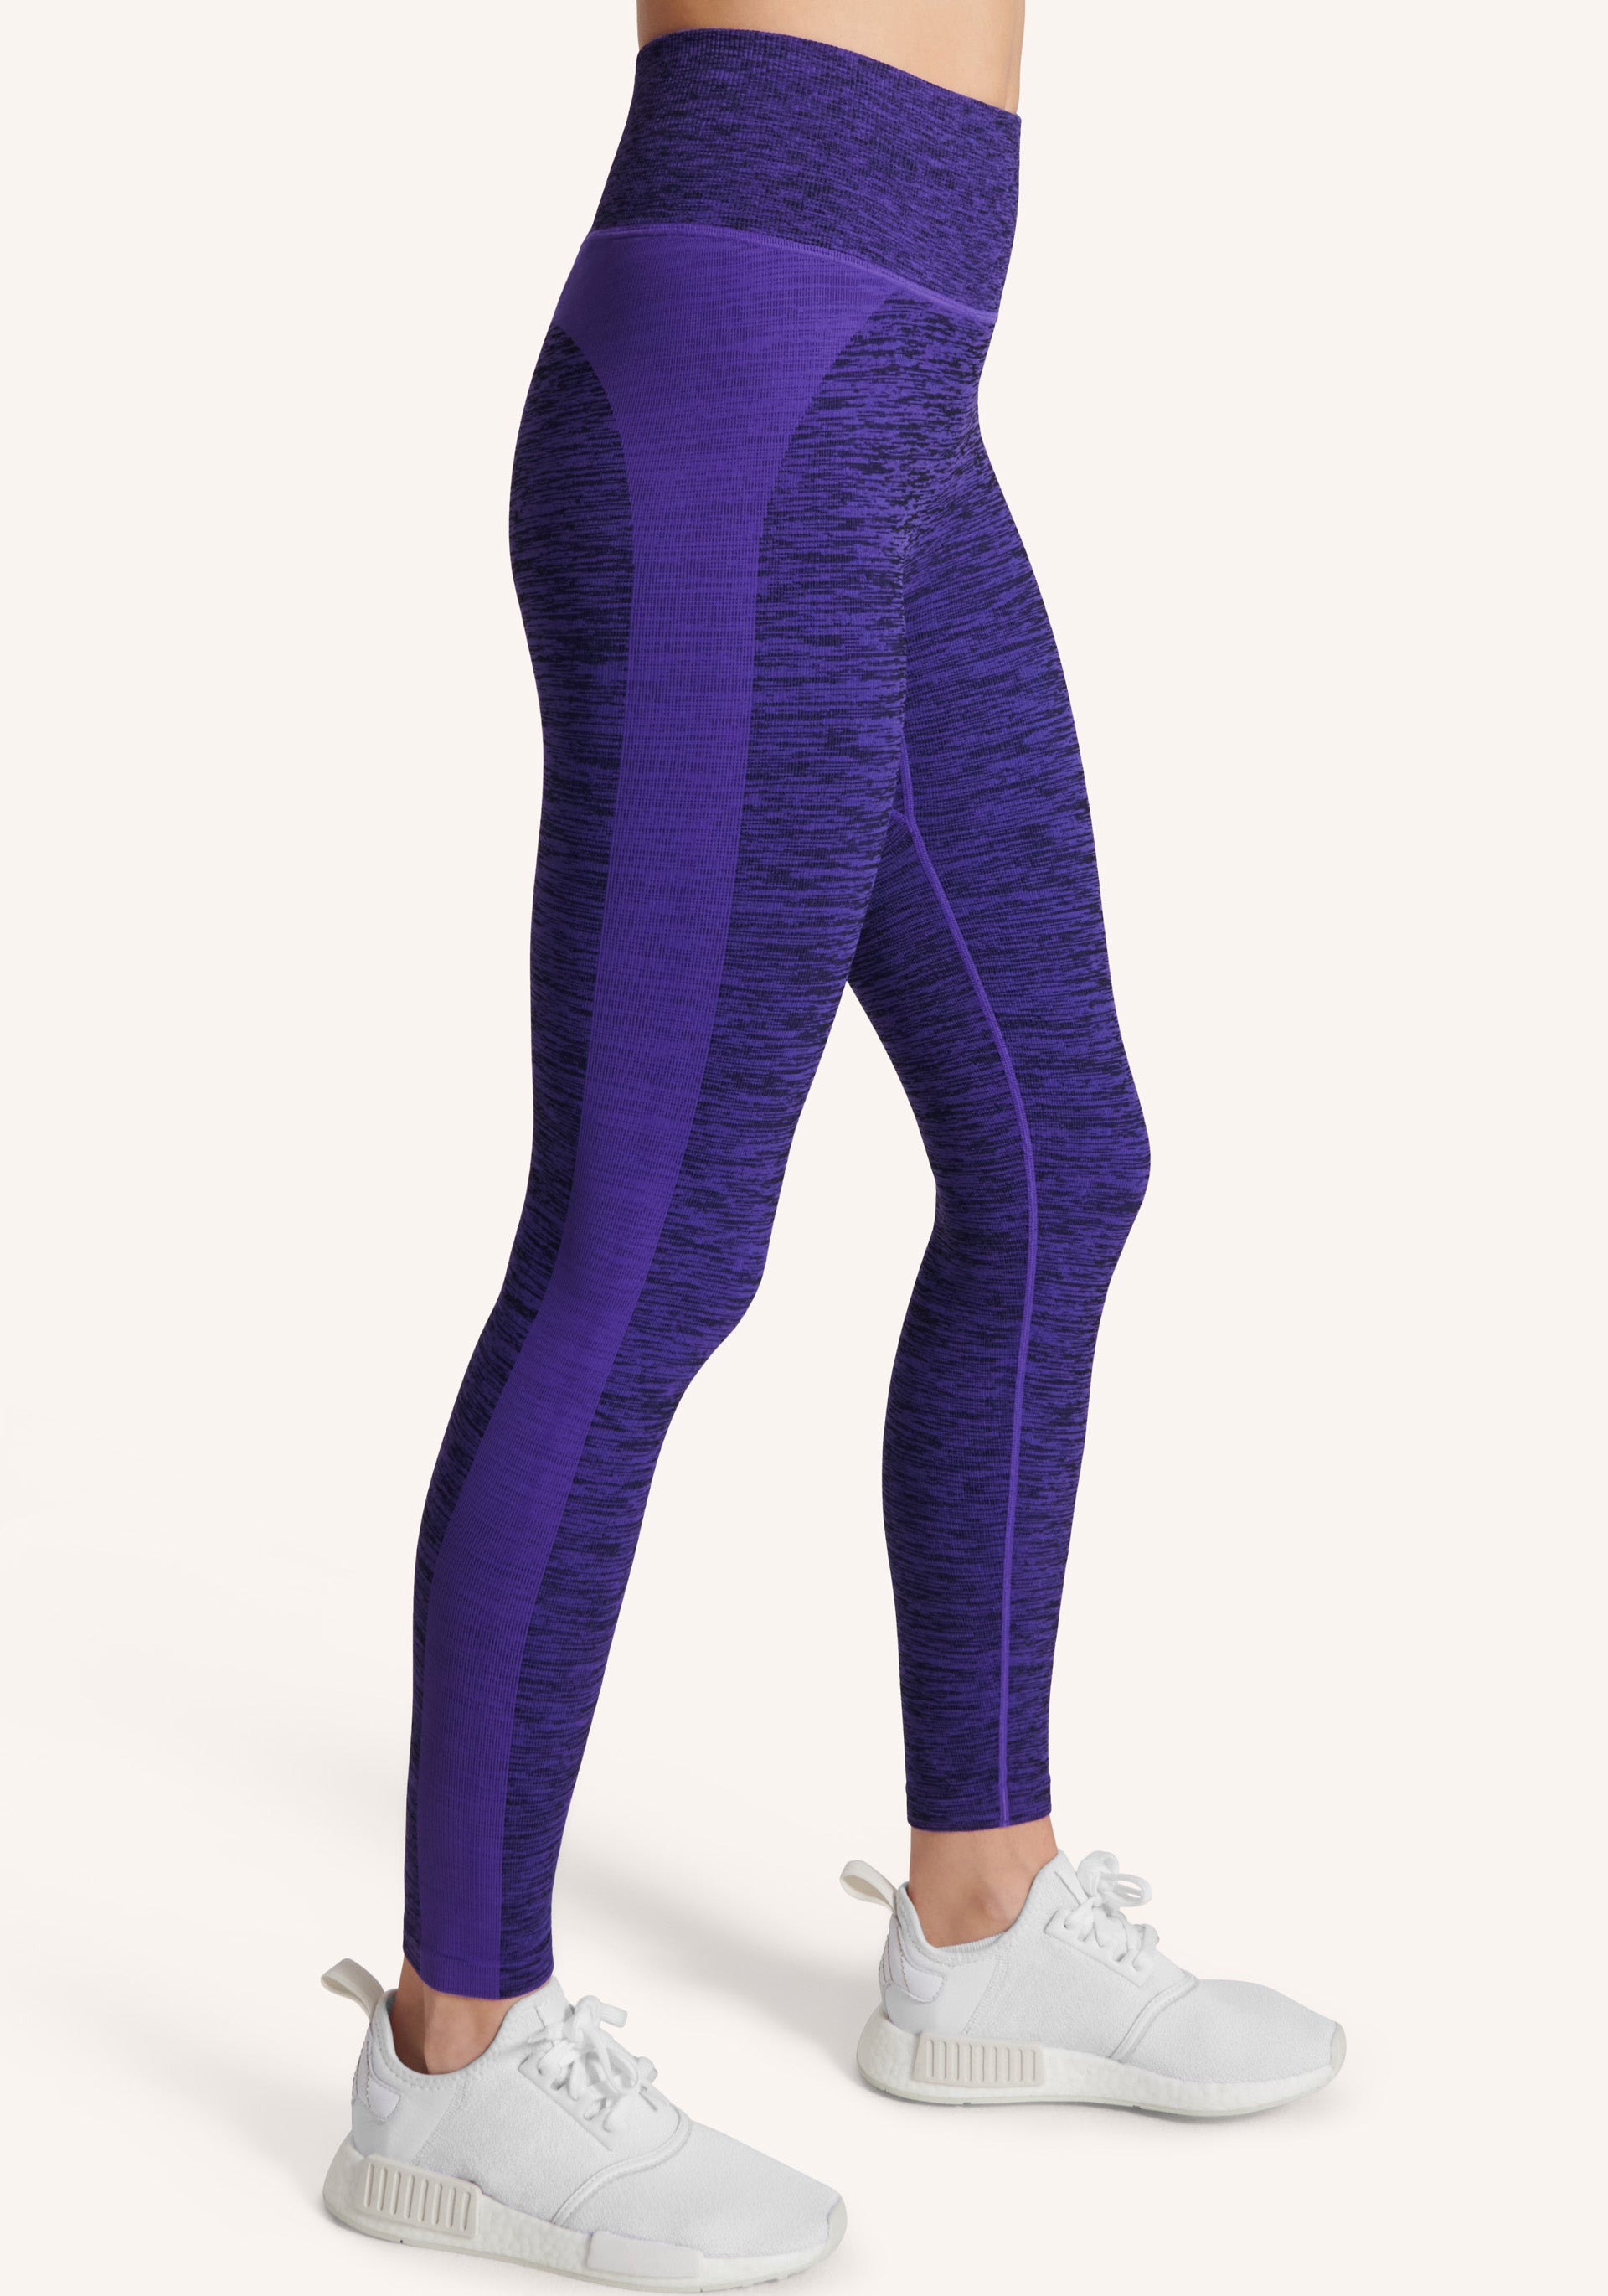 Clothing - Yoga Essentials 7/8 Leggings - Purple